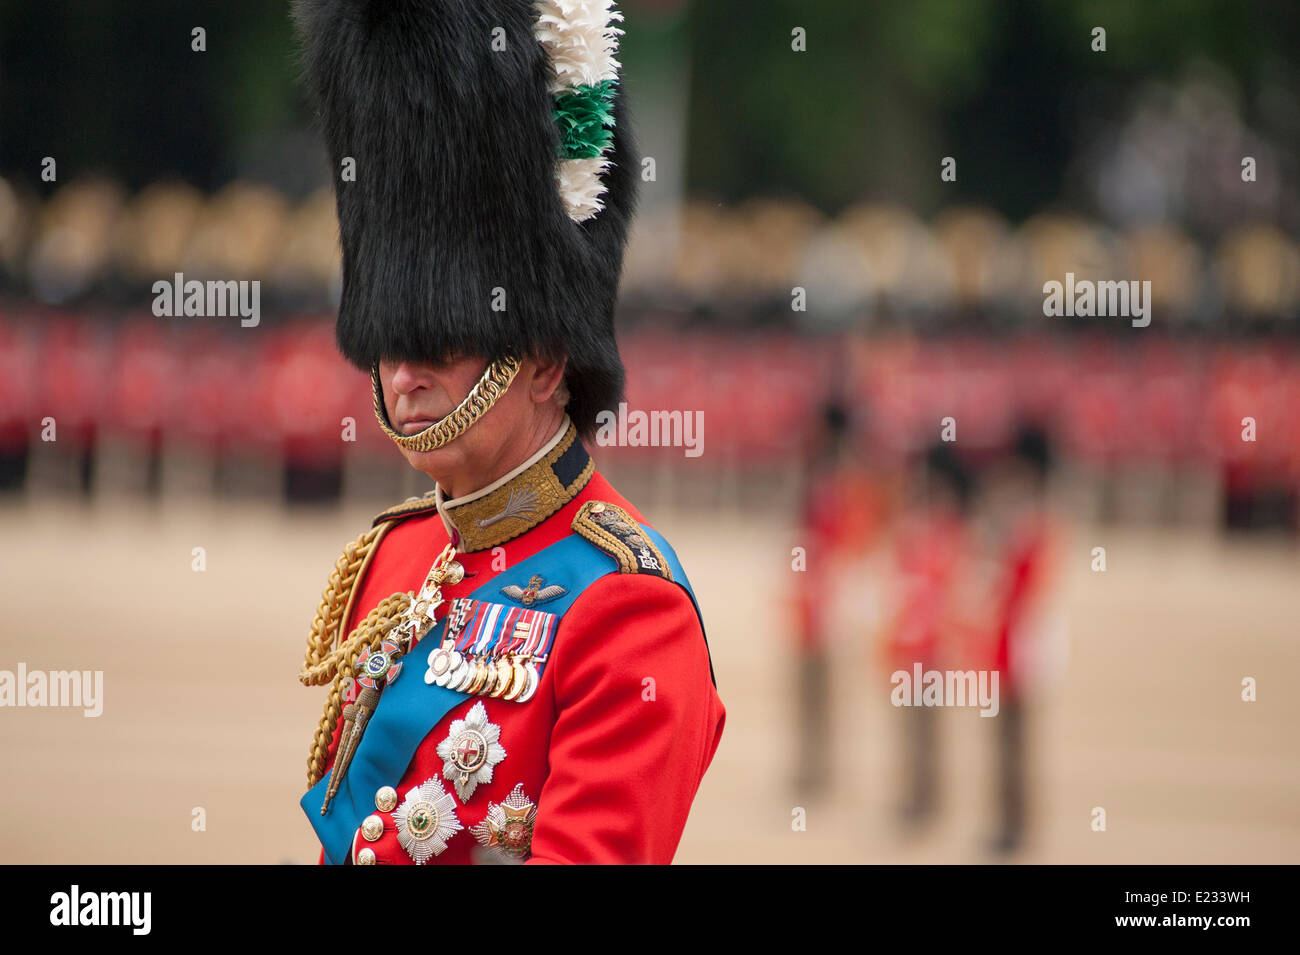 Horse Guards Parade, Londres UK. 14 juin 2014. Son Altesse Royale le Prince de Galles, le Colonel Welsh Guards, arrive dans le cortège royal sur Horse Guards Parade. Credit : Malcolm Park editorial/Alamy Live News Banque D'Images